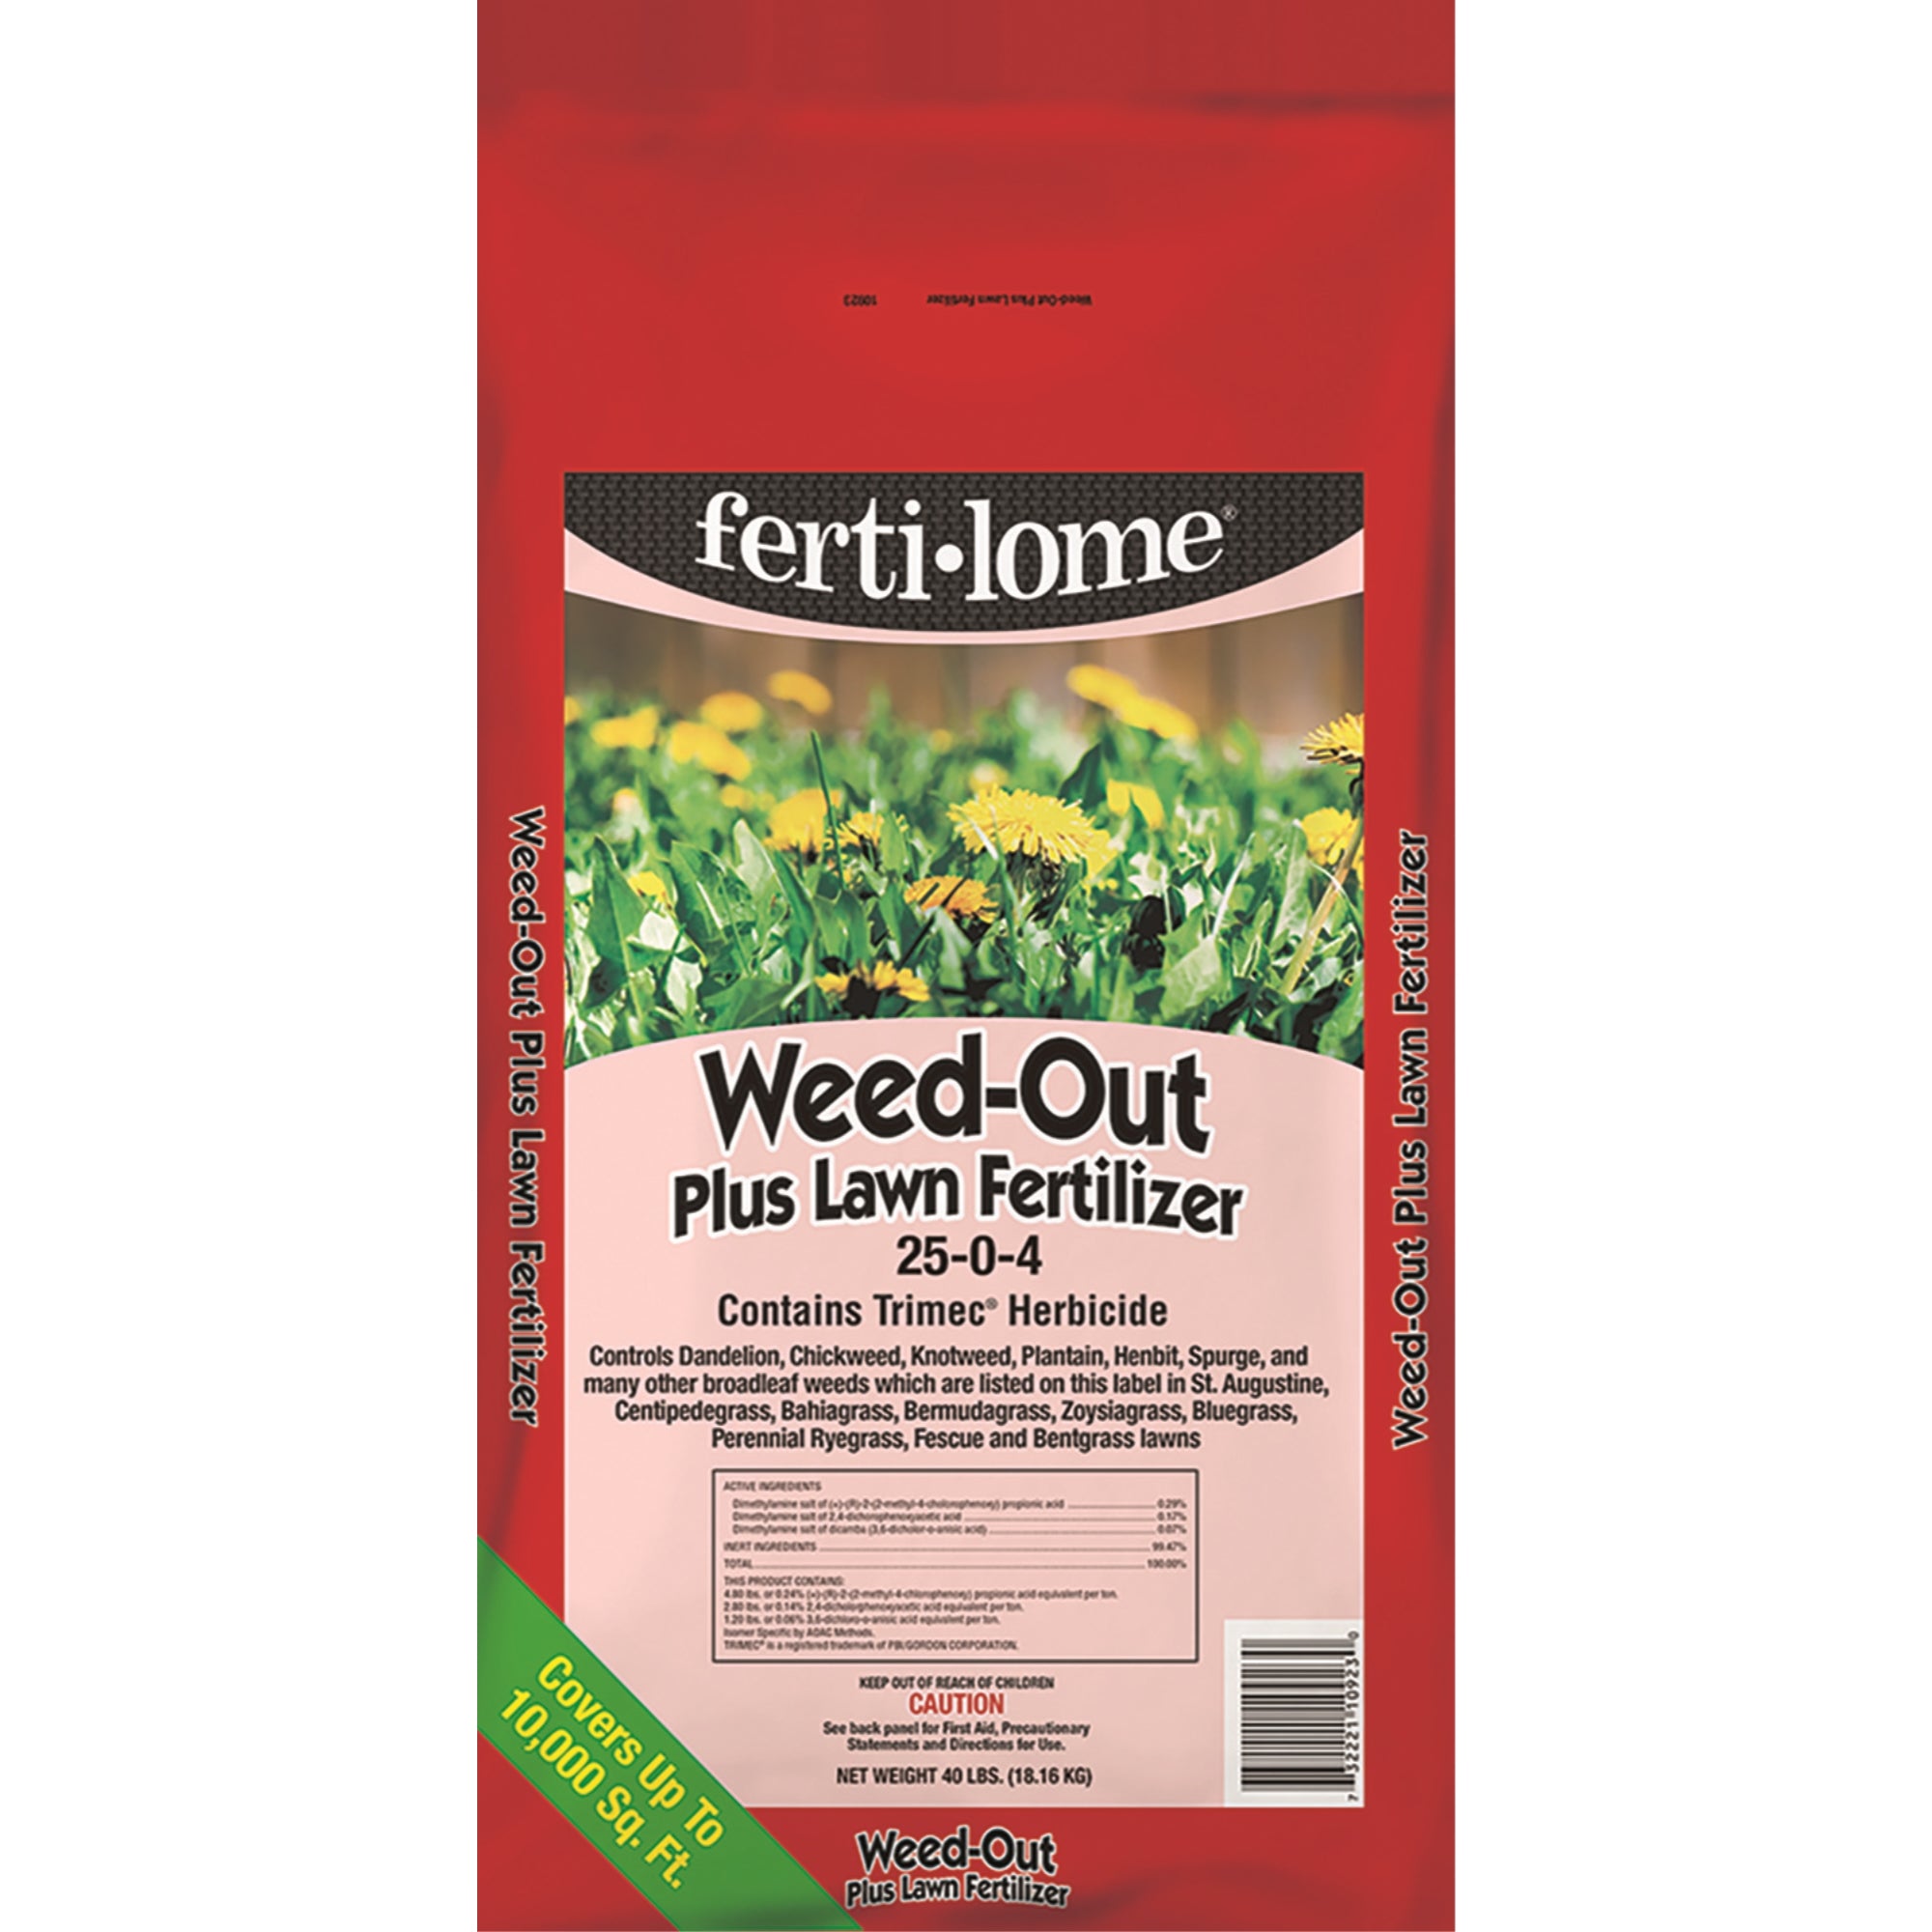 VPG Fertilome Weed Out Plus Lawn Fertilizer with Trimec Herbicide, 25-0-4